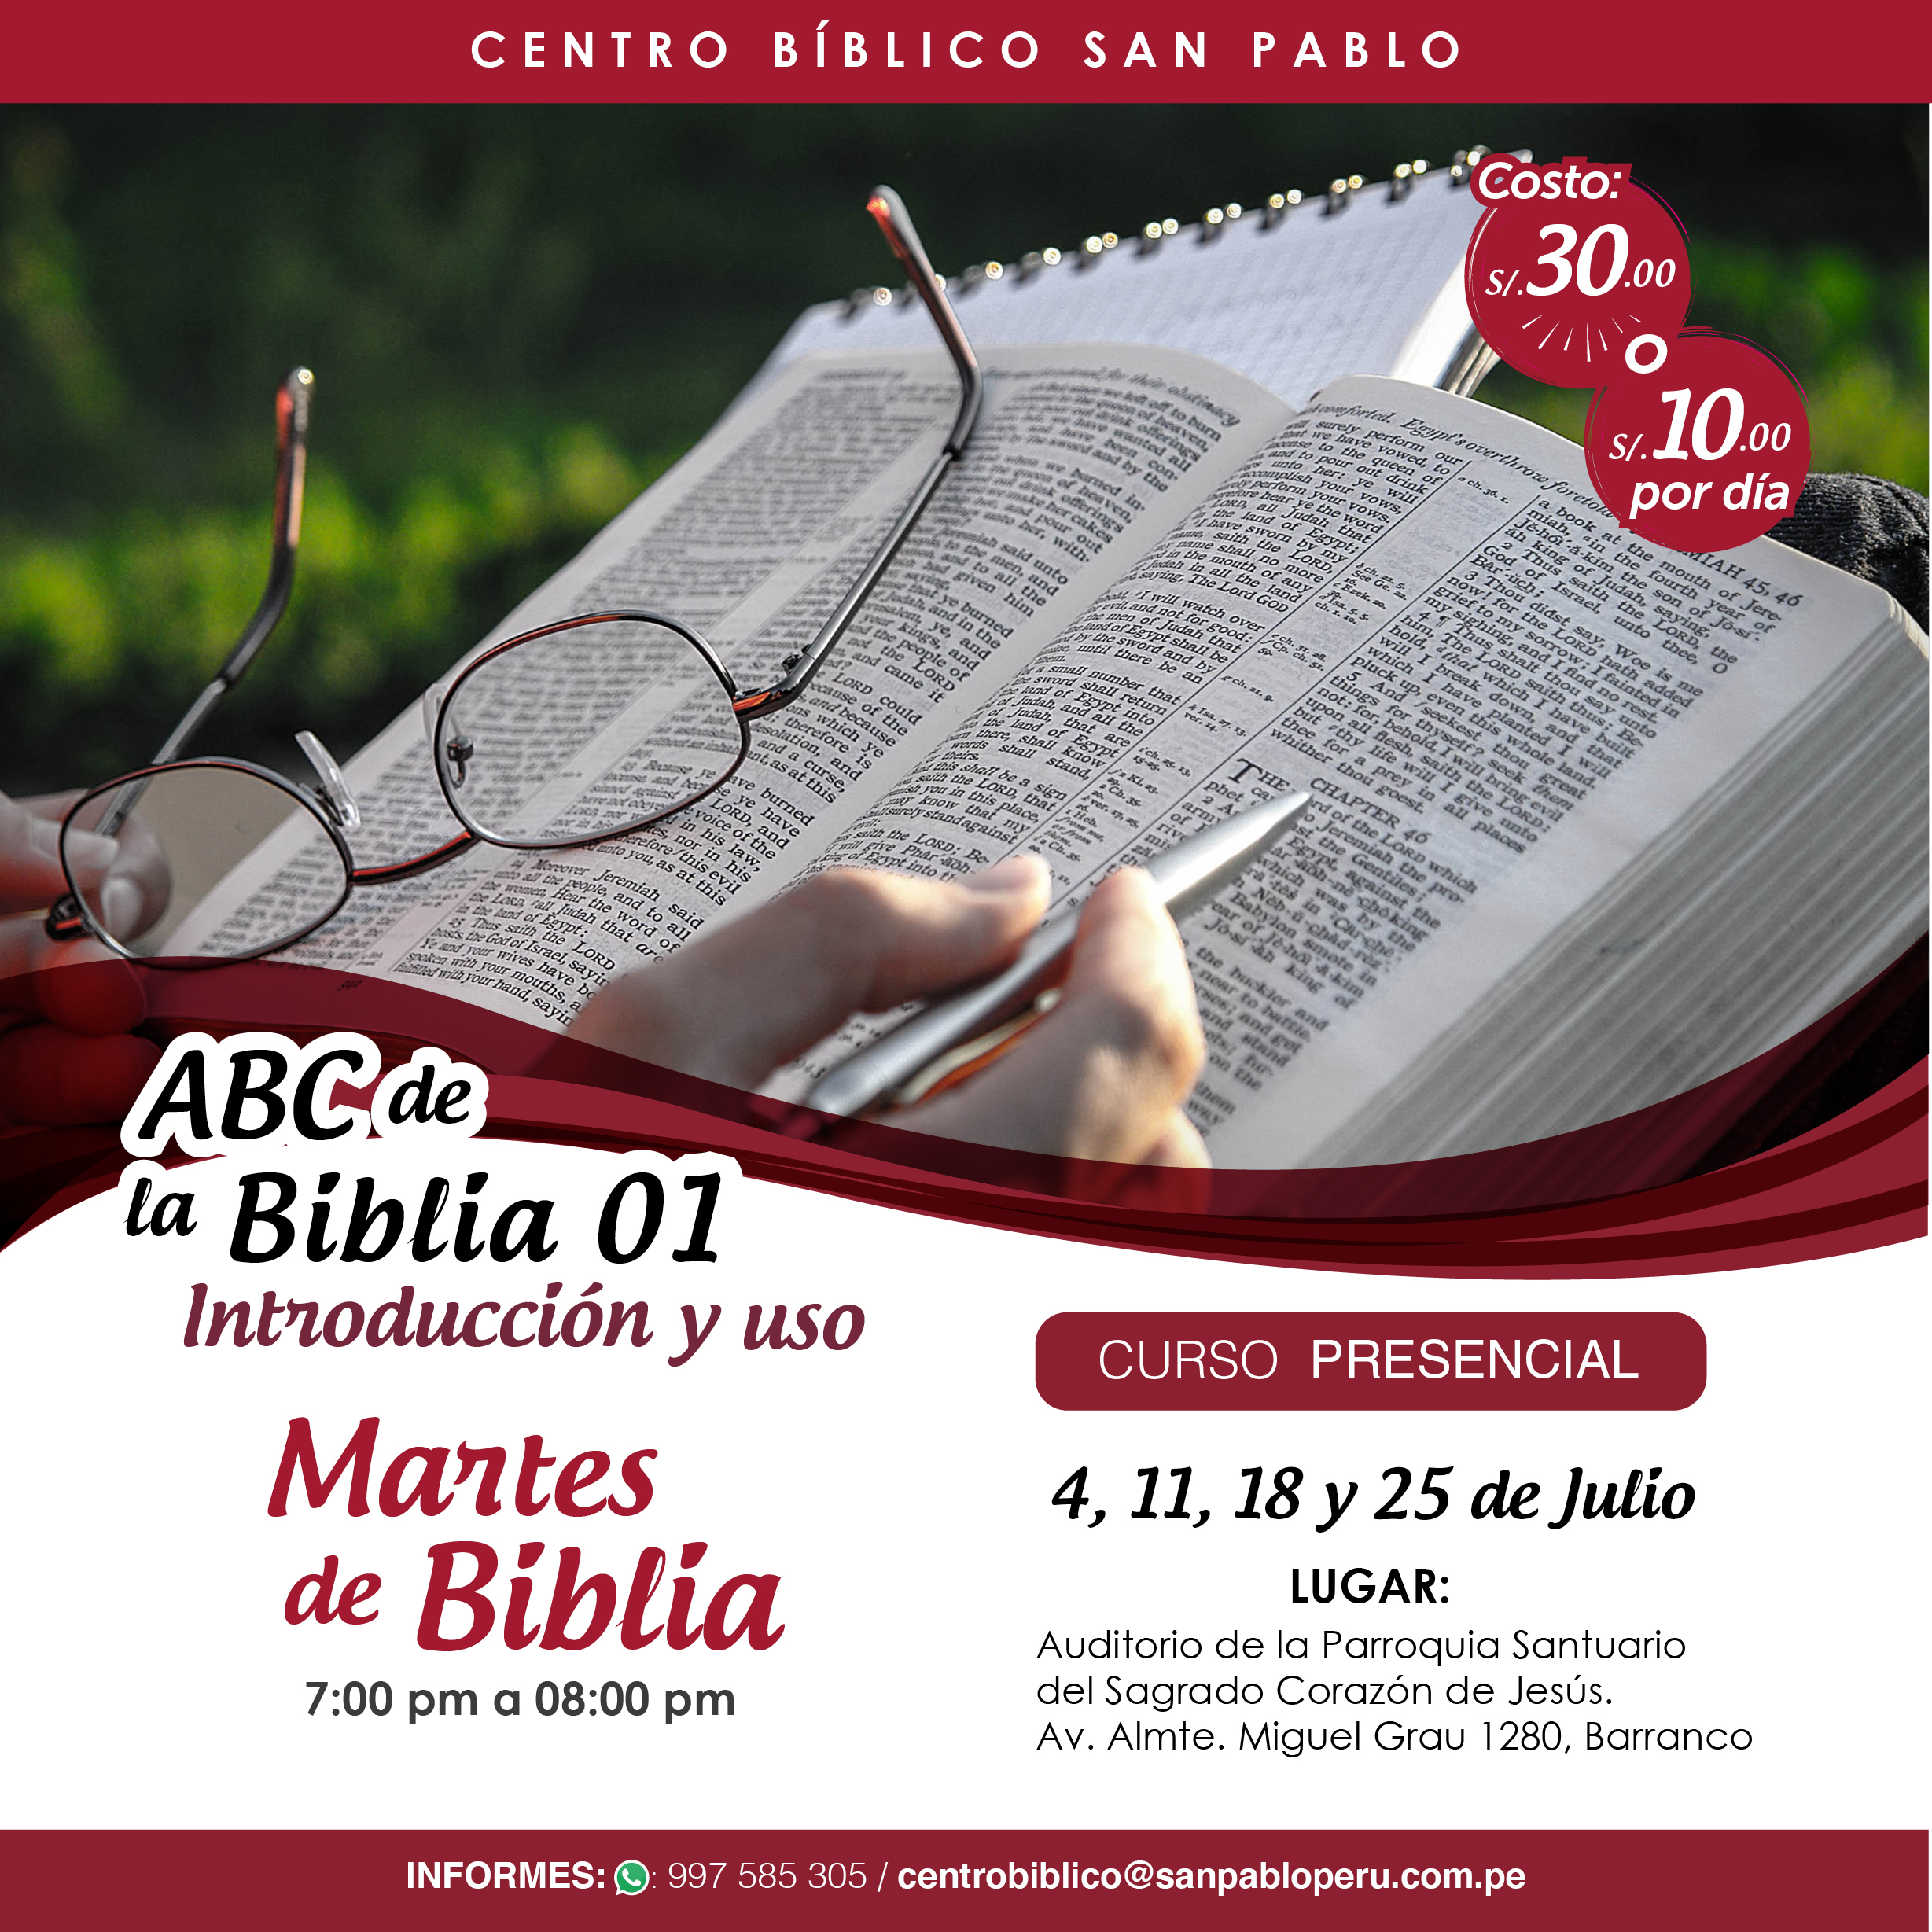 Curso Presencial: “ABC de la Biblia 01”